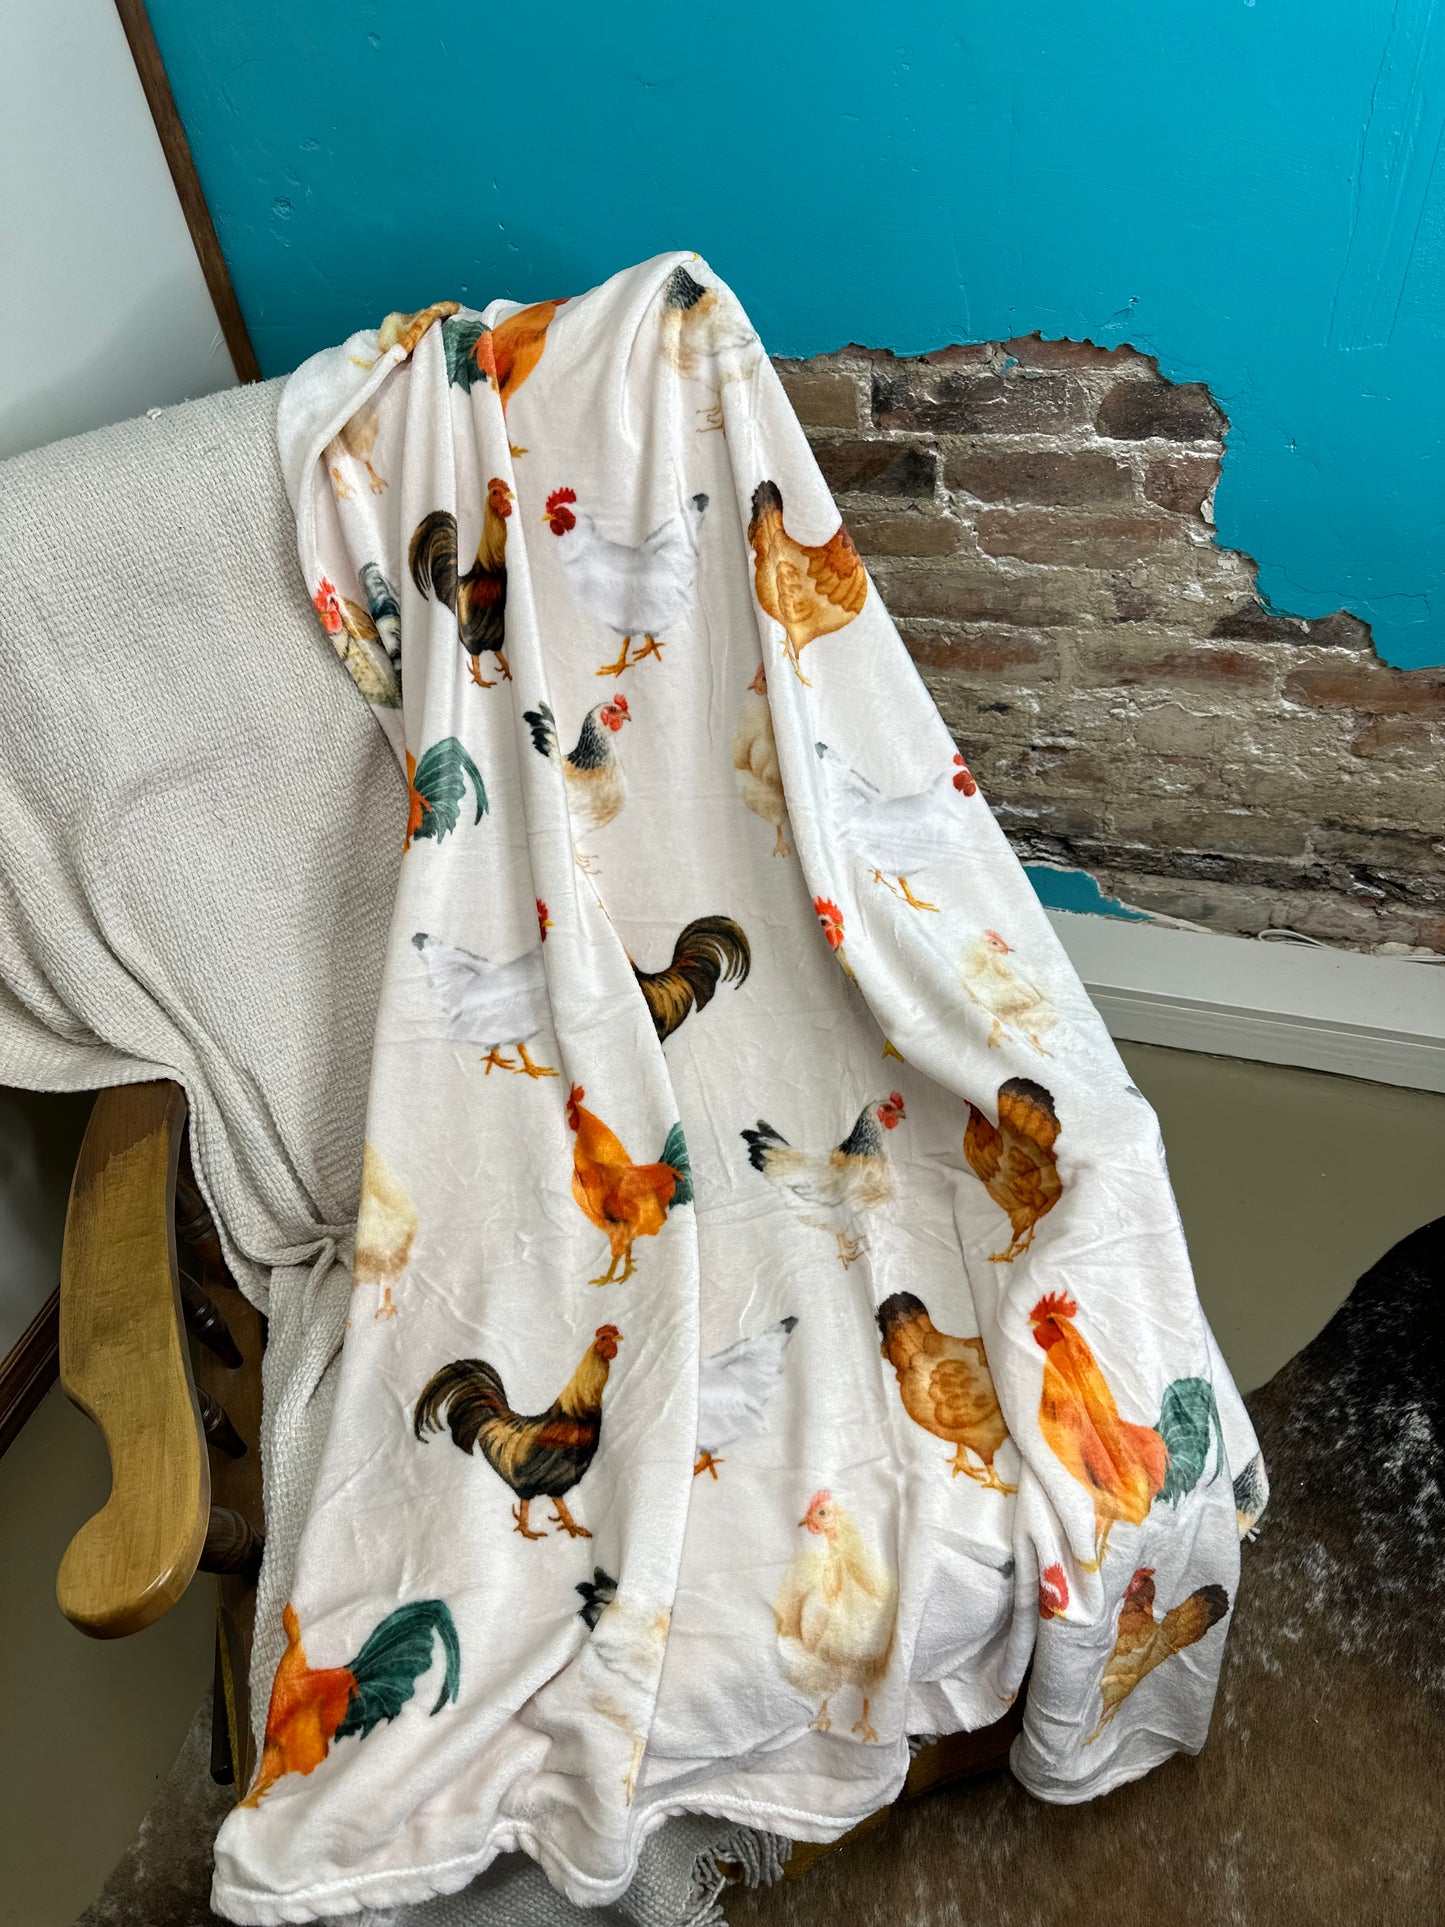 The Chicken Blanket